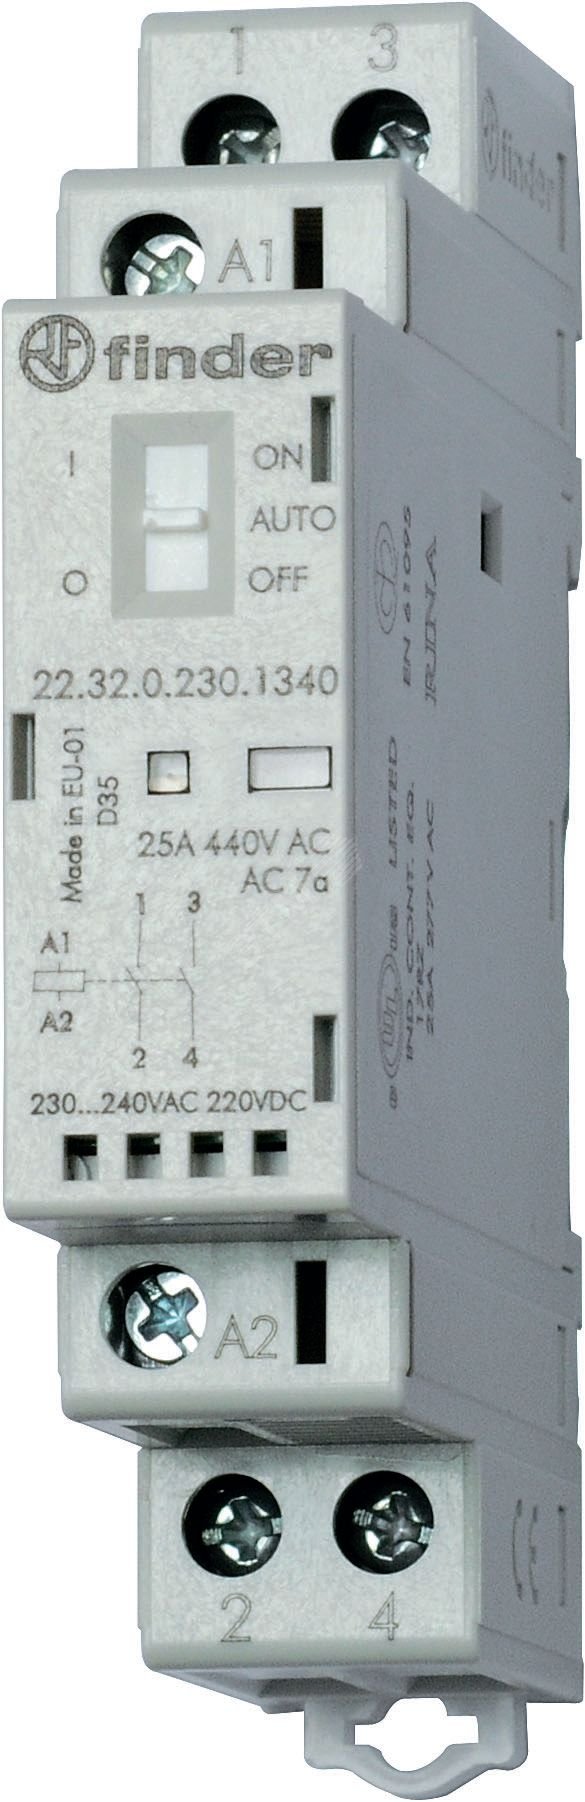 Контактор модульный 2NO 25А контакты AgSnO2 катушка 12В АС/DC 17.5мм IP20 переключатель Авто-Вкл-Выкл+механический индикатор/LED (1шт) 22.32.0.012.4340PAS FINDER - превью 2